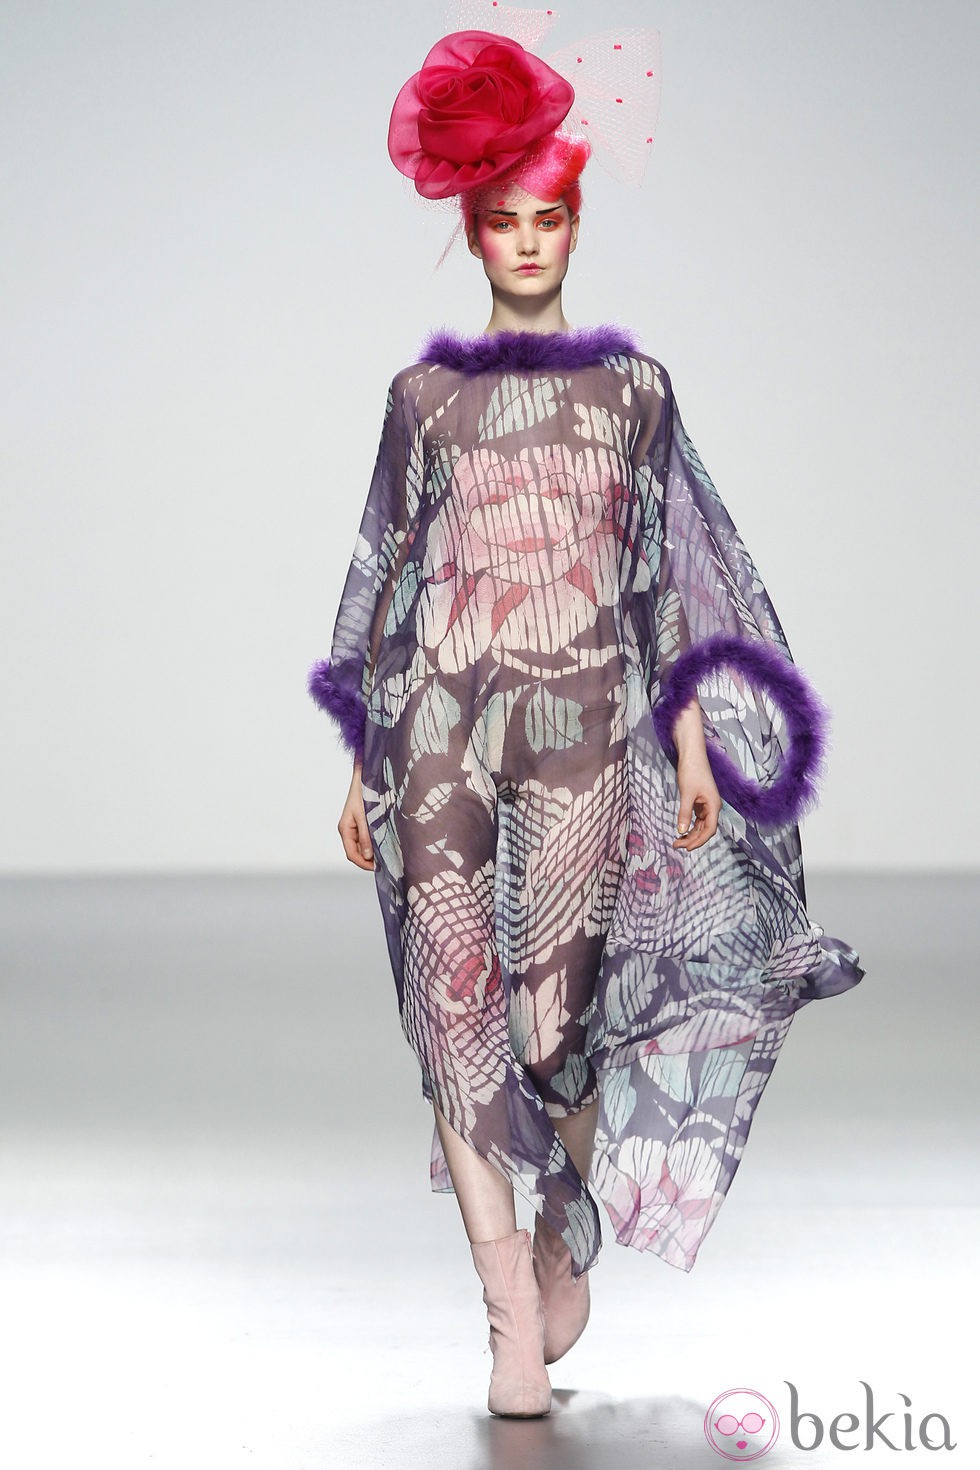 Ligero vestido transparente de Elisa Palomino en la Madrid Fashion Week